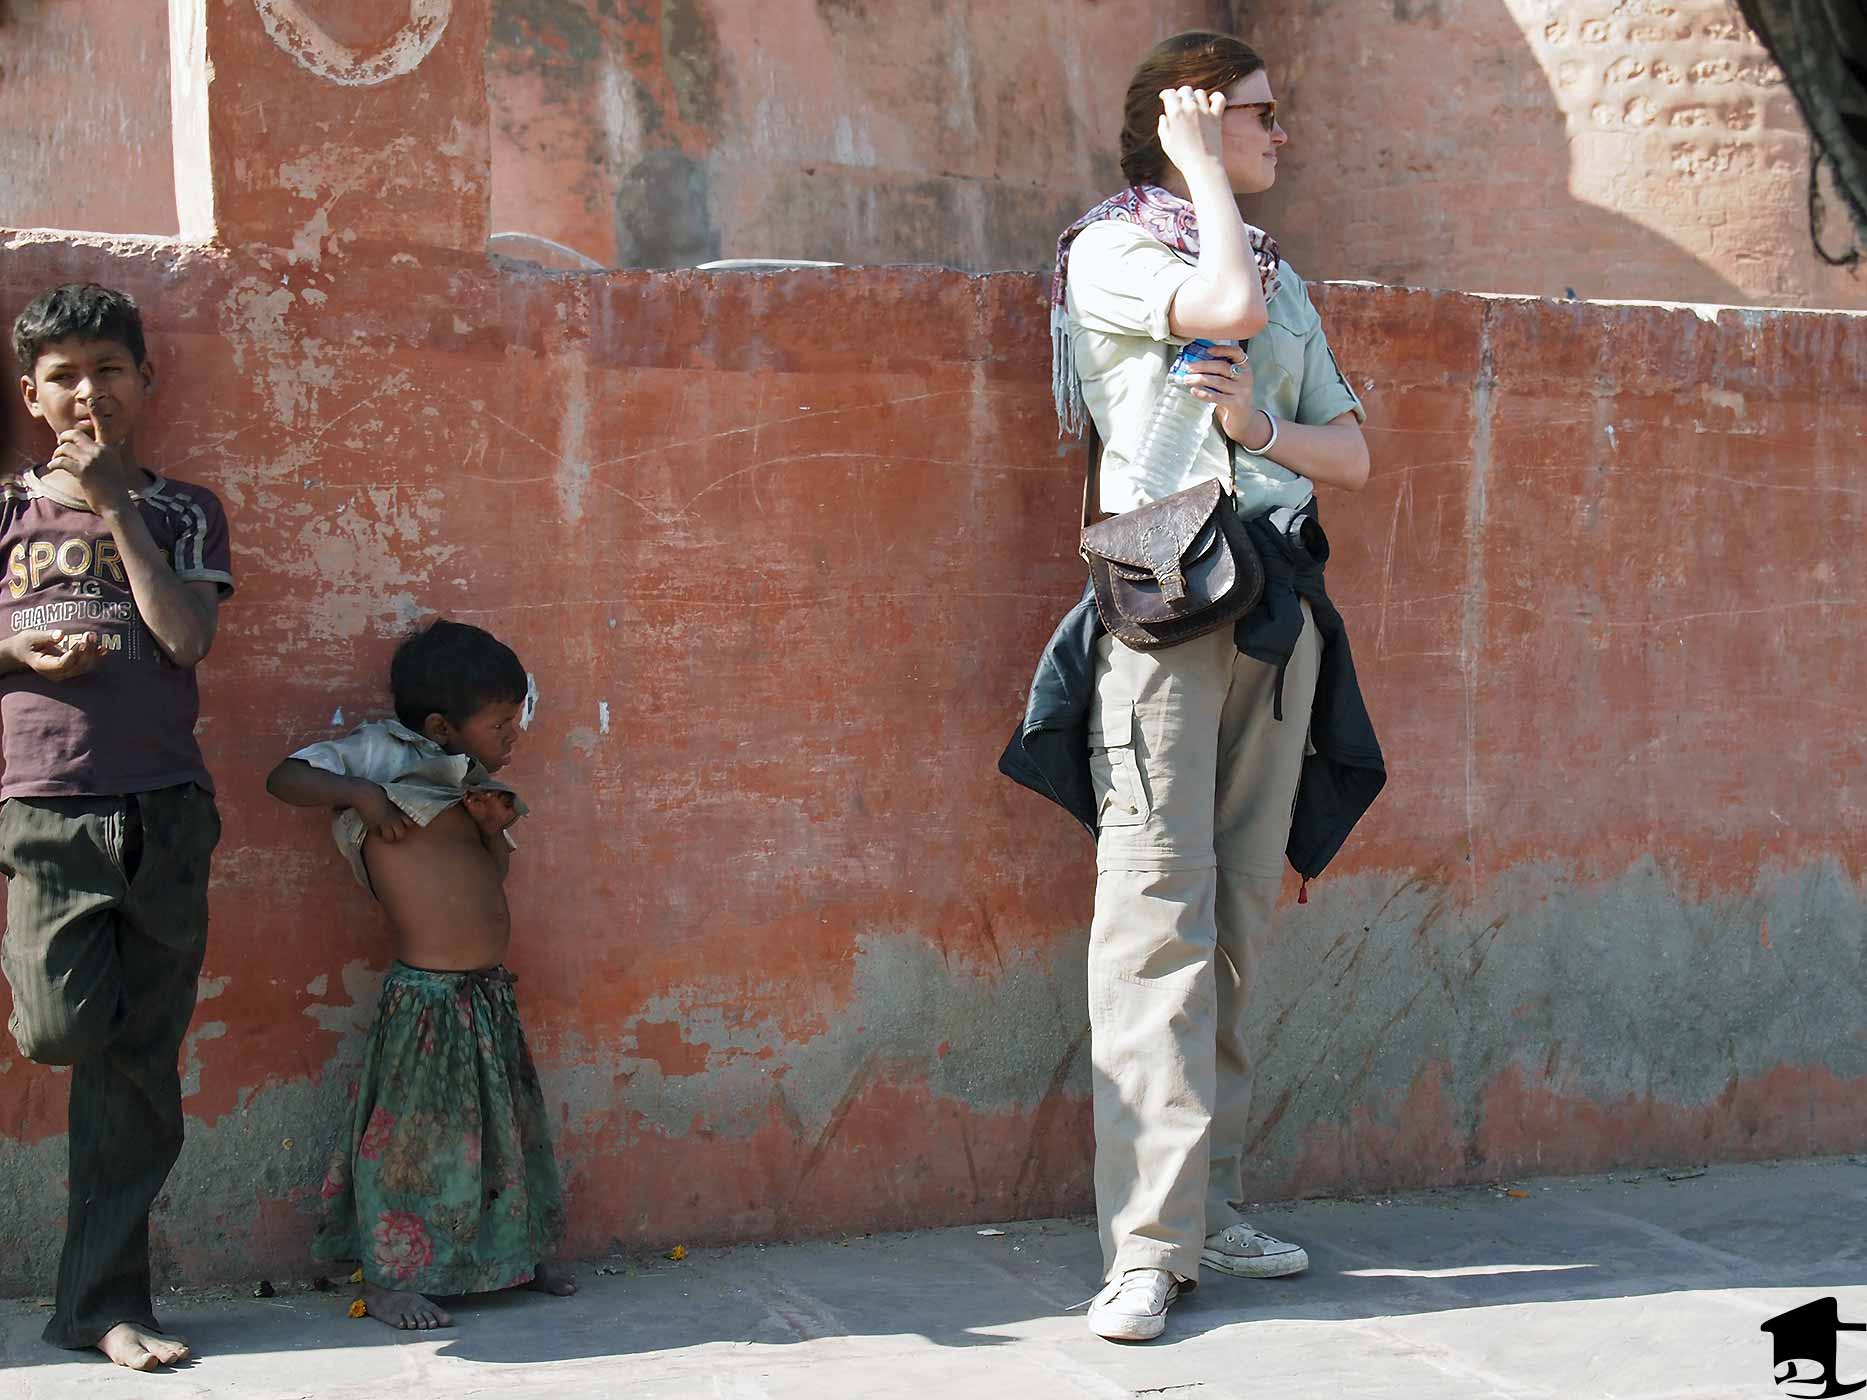 Children Beggars in India